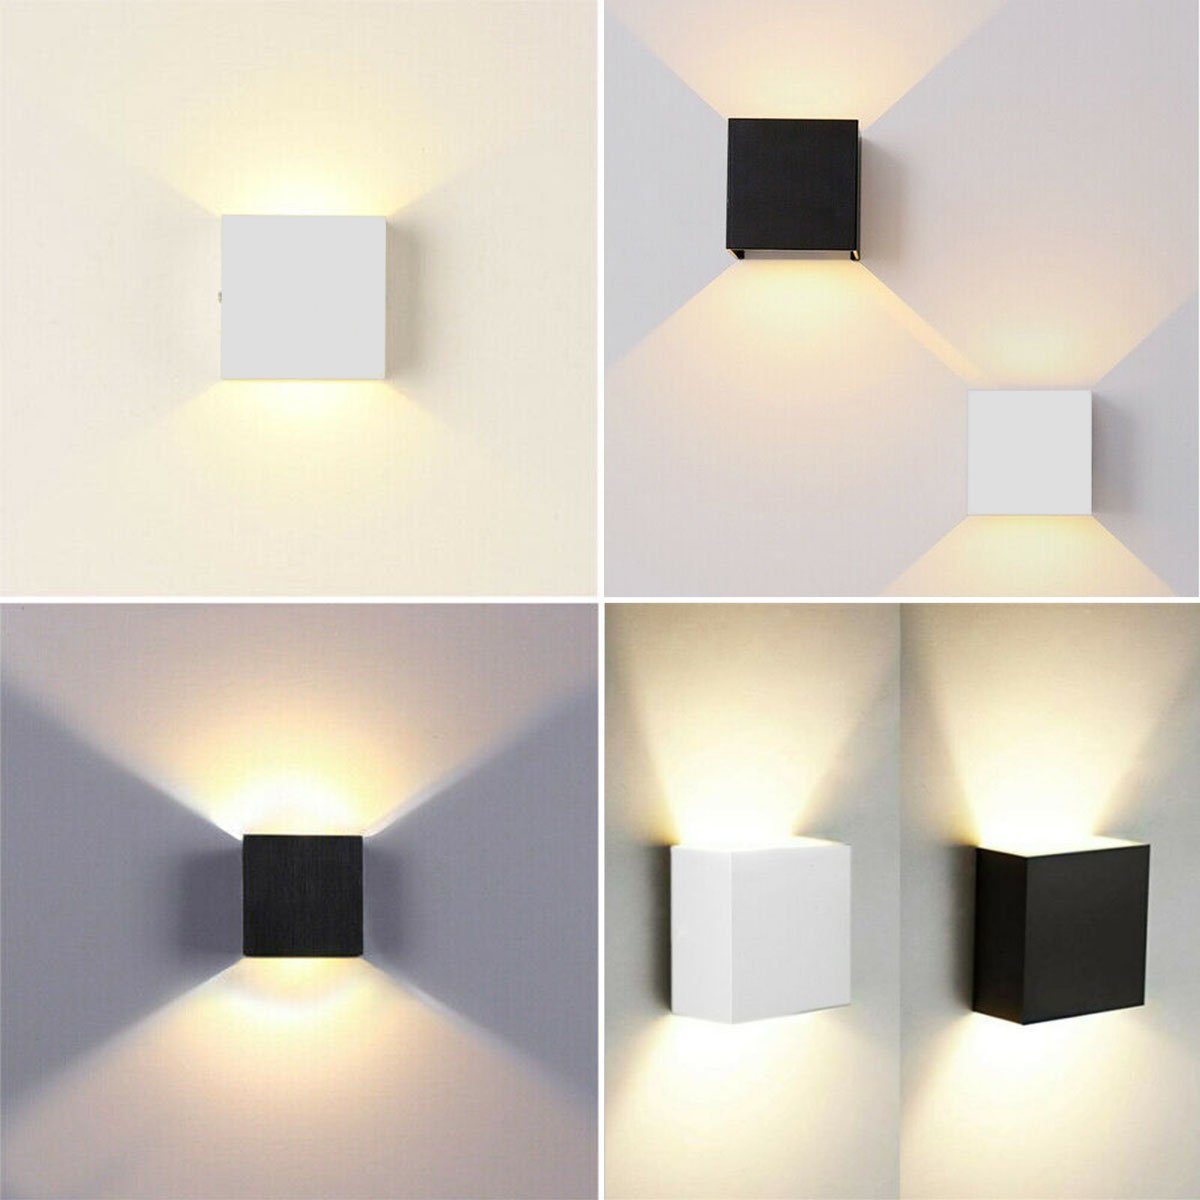 https://i.otto.de/i/otto/75f11888-482e-4698-8339-af8de98a02db/oyajia-wandleuchte-6w-7w-led-wandlampe-cube-lampe-wand-strahler-licht-up-down-leuchten-led-fest-integriert-warmweiss-treppen-flur-modern-square-lampe-fuer-wohnzimmer-schlafzimmer-balkon-7w-schwarz.jpg?$formatz$